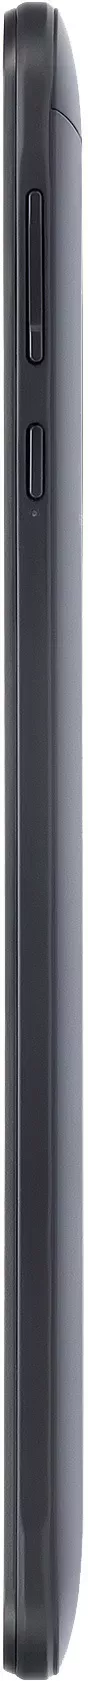 Планшет Digma 8269C 3G (черный) icon 7